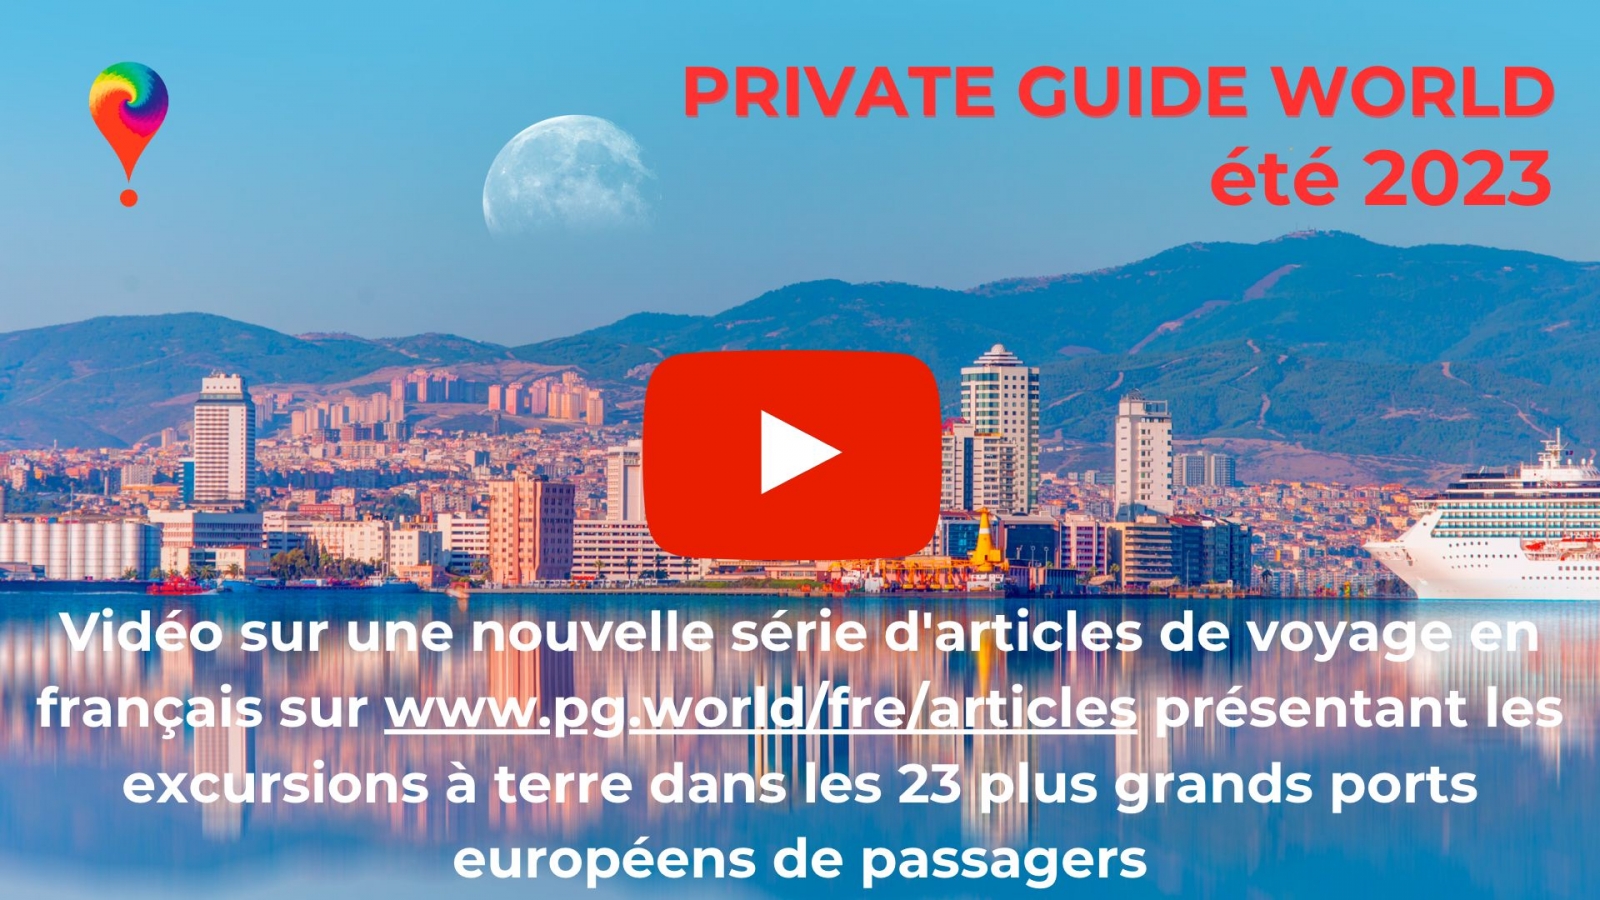 Vidéo sur notre chaîne YouTube @PrivateGuideWorld :: Excursions à terre dans 23 ports de passagers d'Europe sur www.pg.world